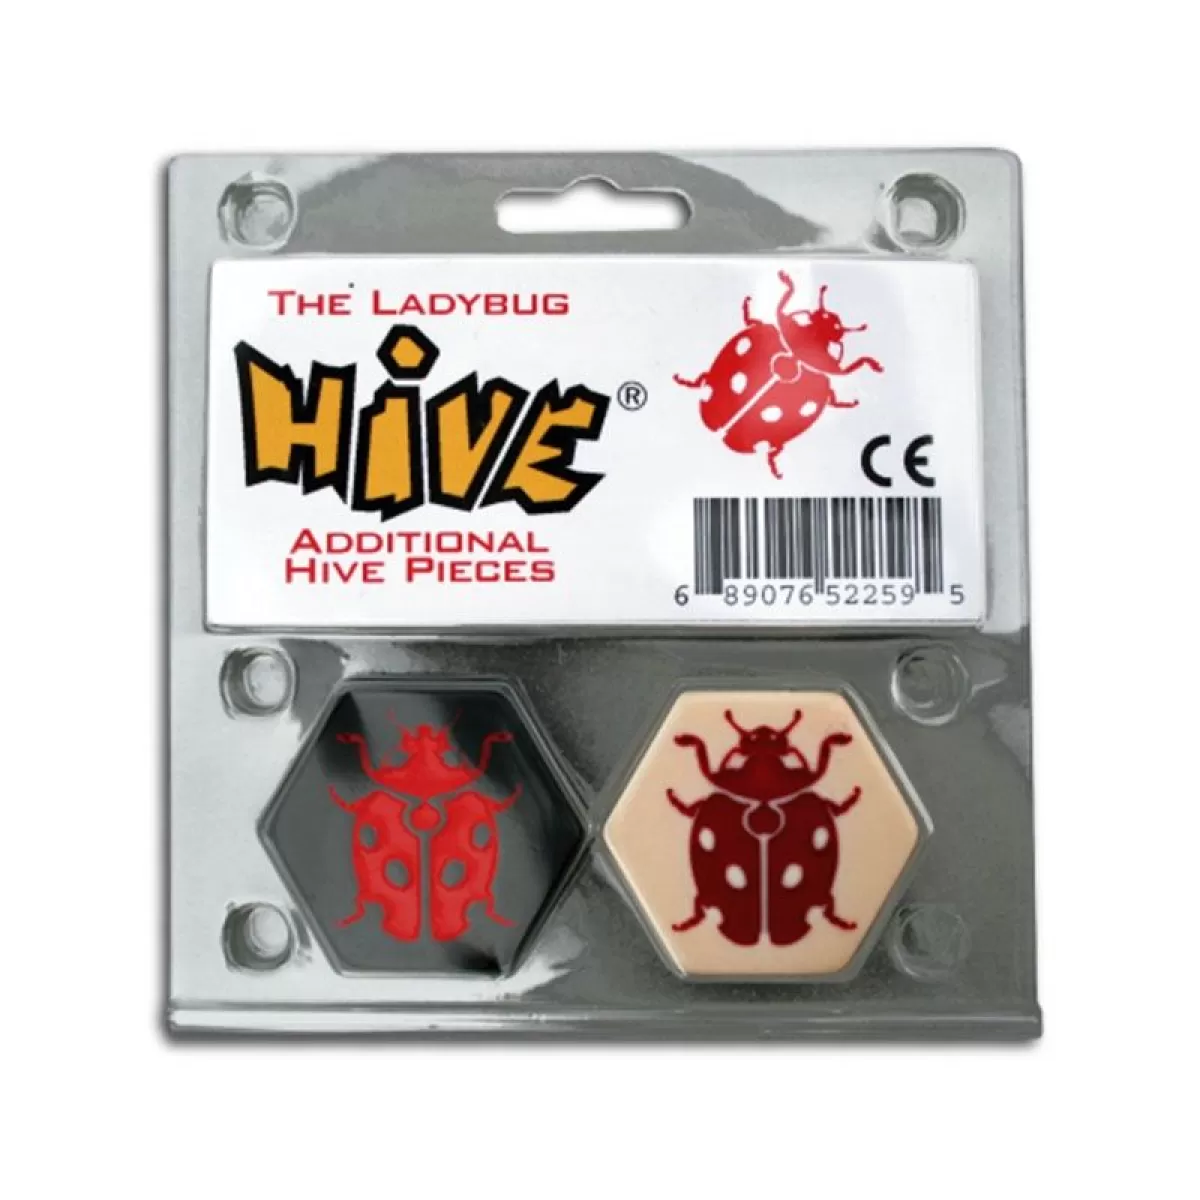 Hive: The ladybug